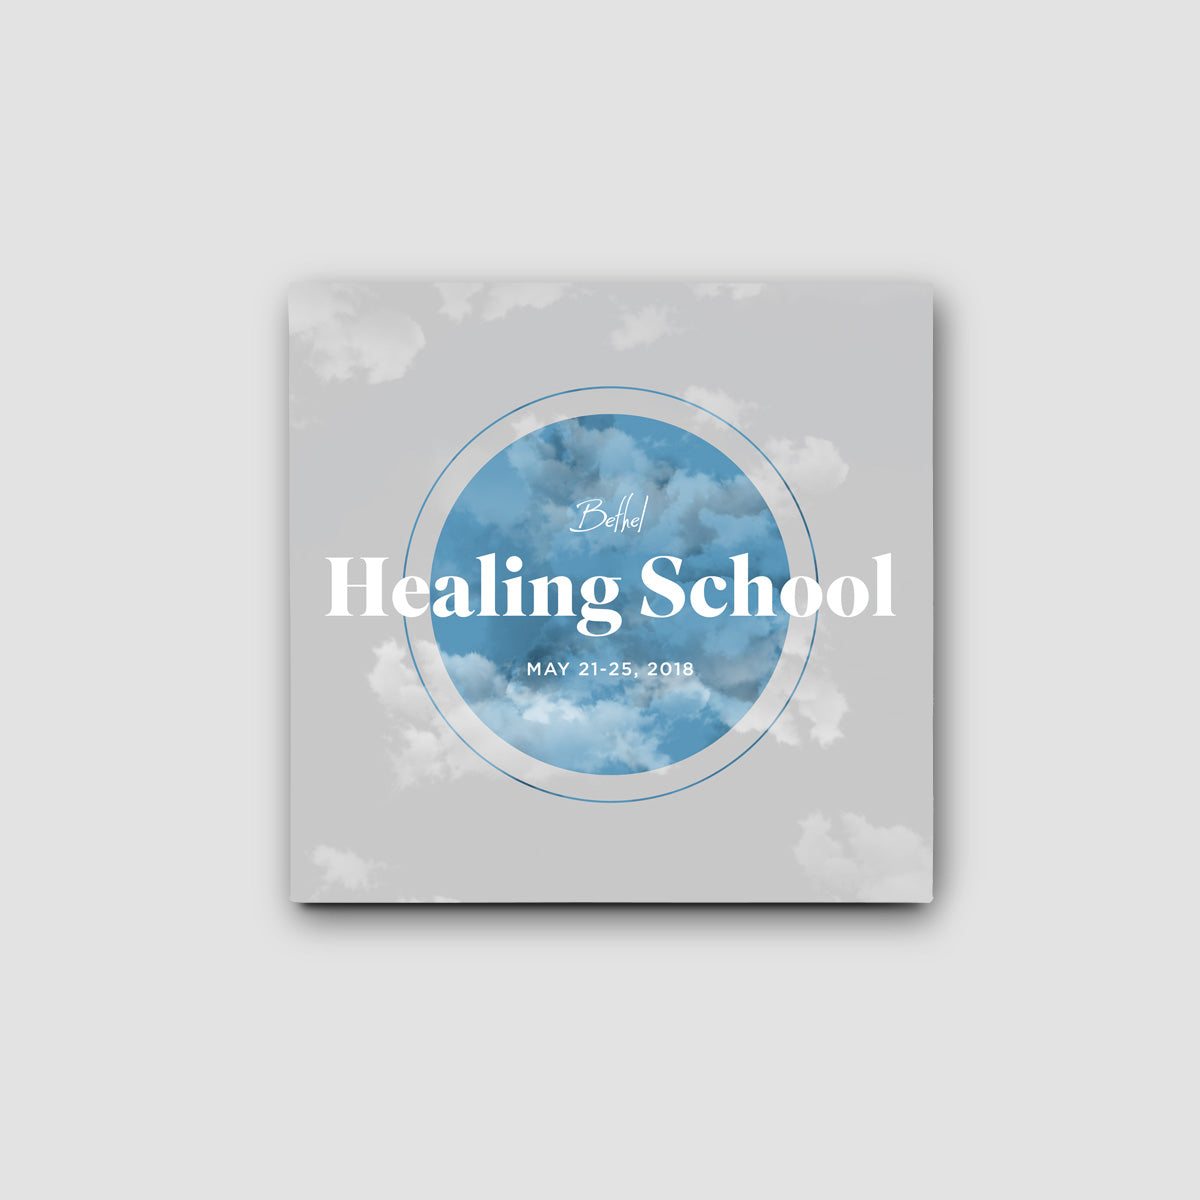 Bethel Healing School 2018